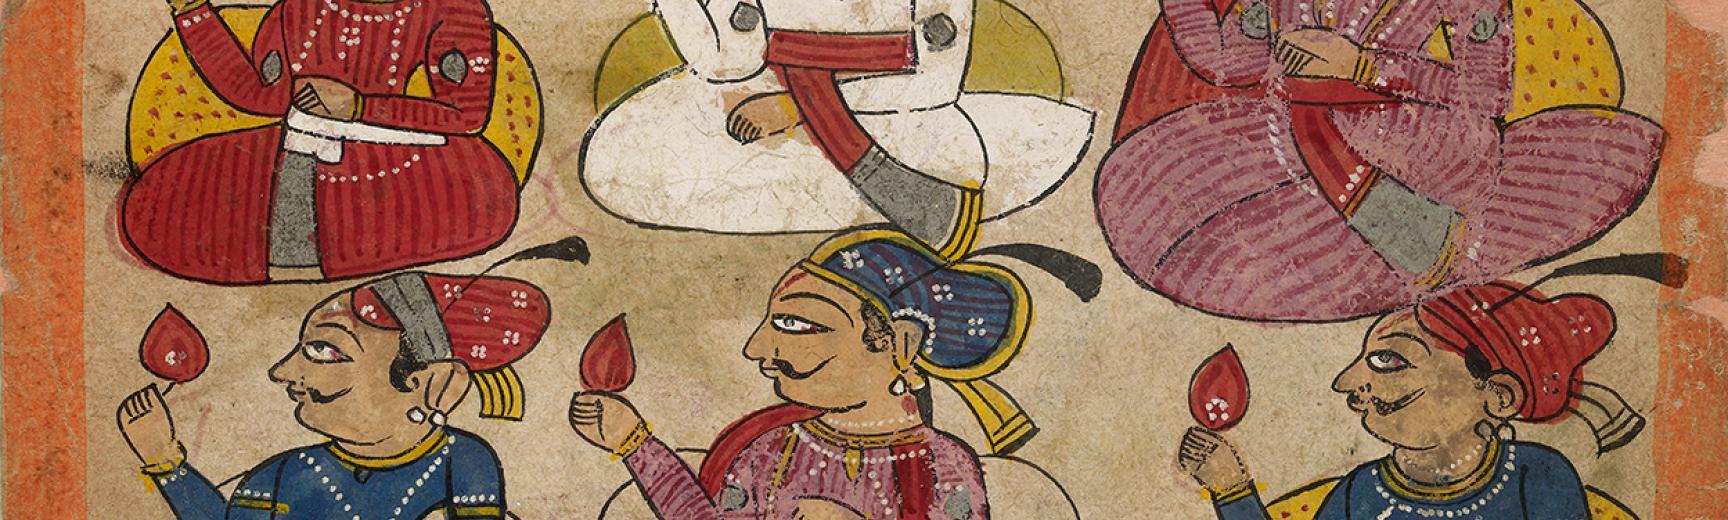 Noblemen in durbar Verso: Dancing girl performing for a Raja